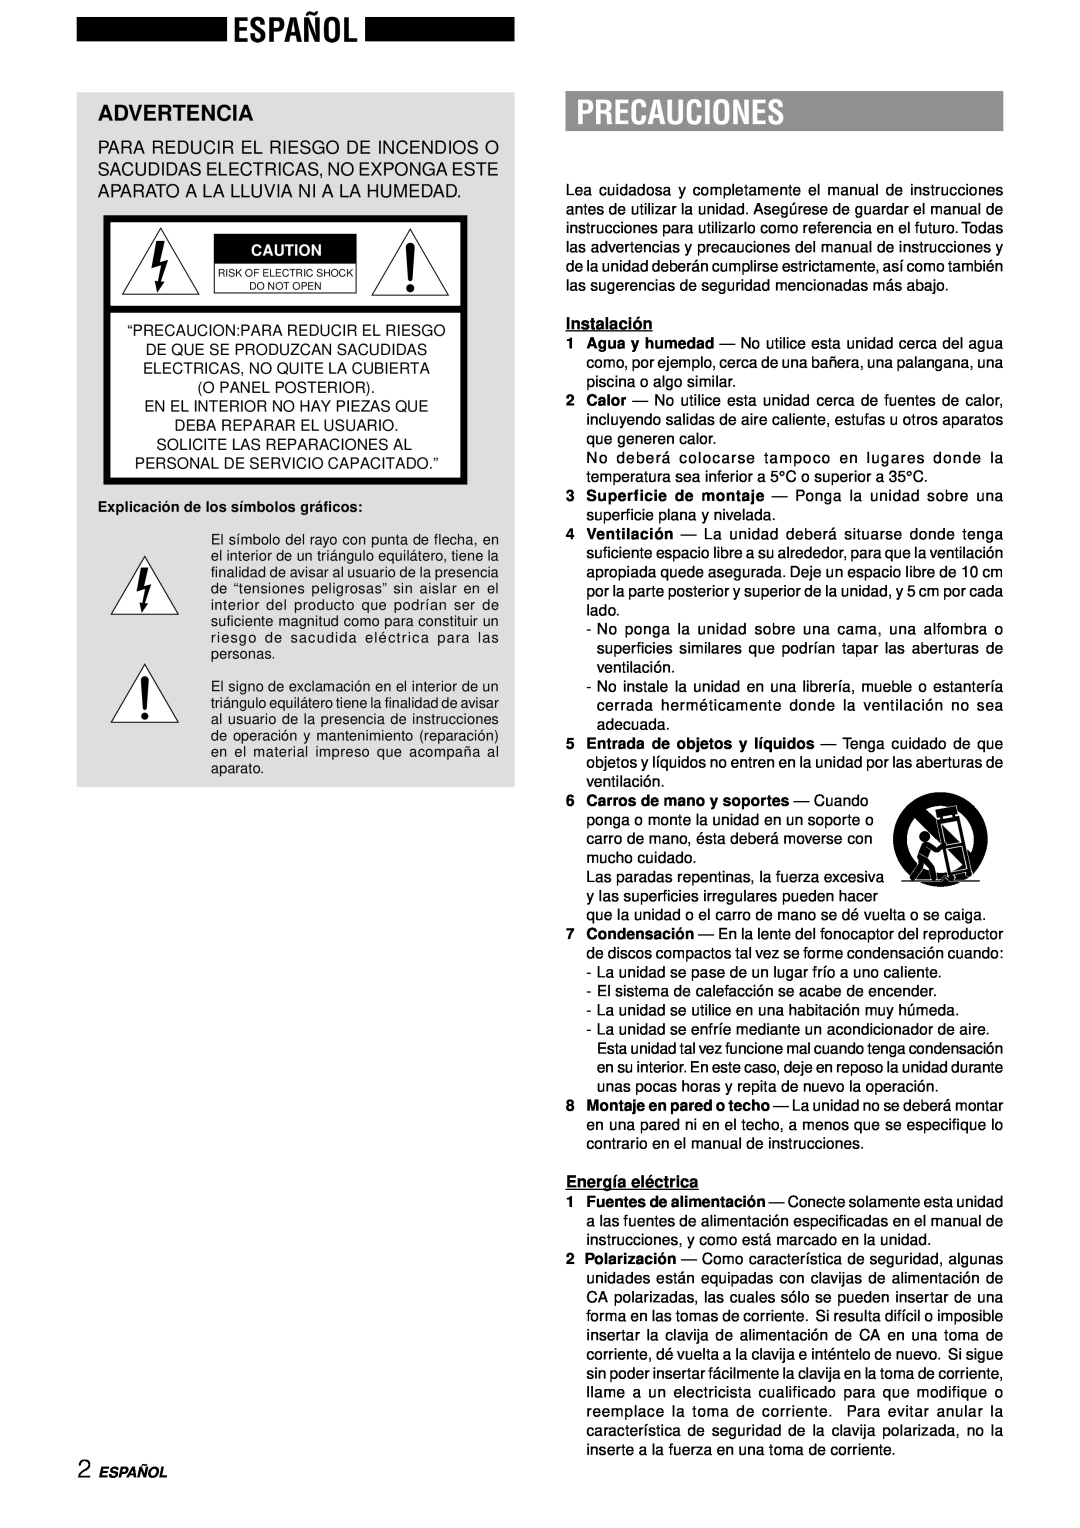 Aiwa NSX-AJ50 operating instructions Español, Precauciones, Advertencia, Instalació n, Energía elé ctrica 